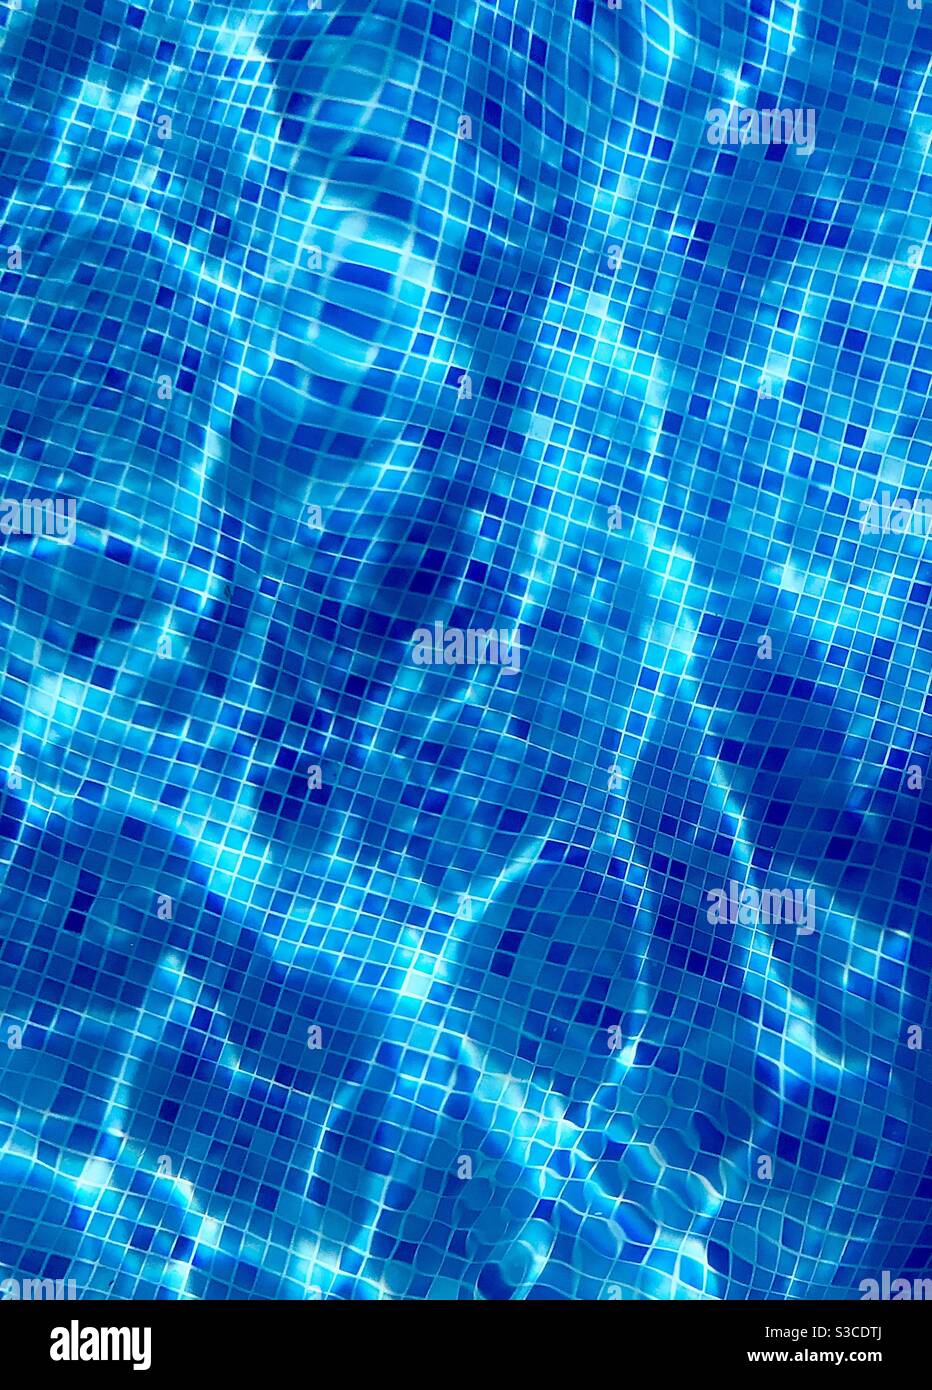 Bleu aigue-marine du fond de la piscine, carreaux de bisazza réfractés par l'eau et les vagues Banque D'Images